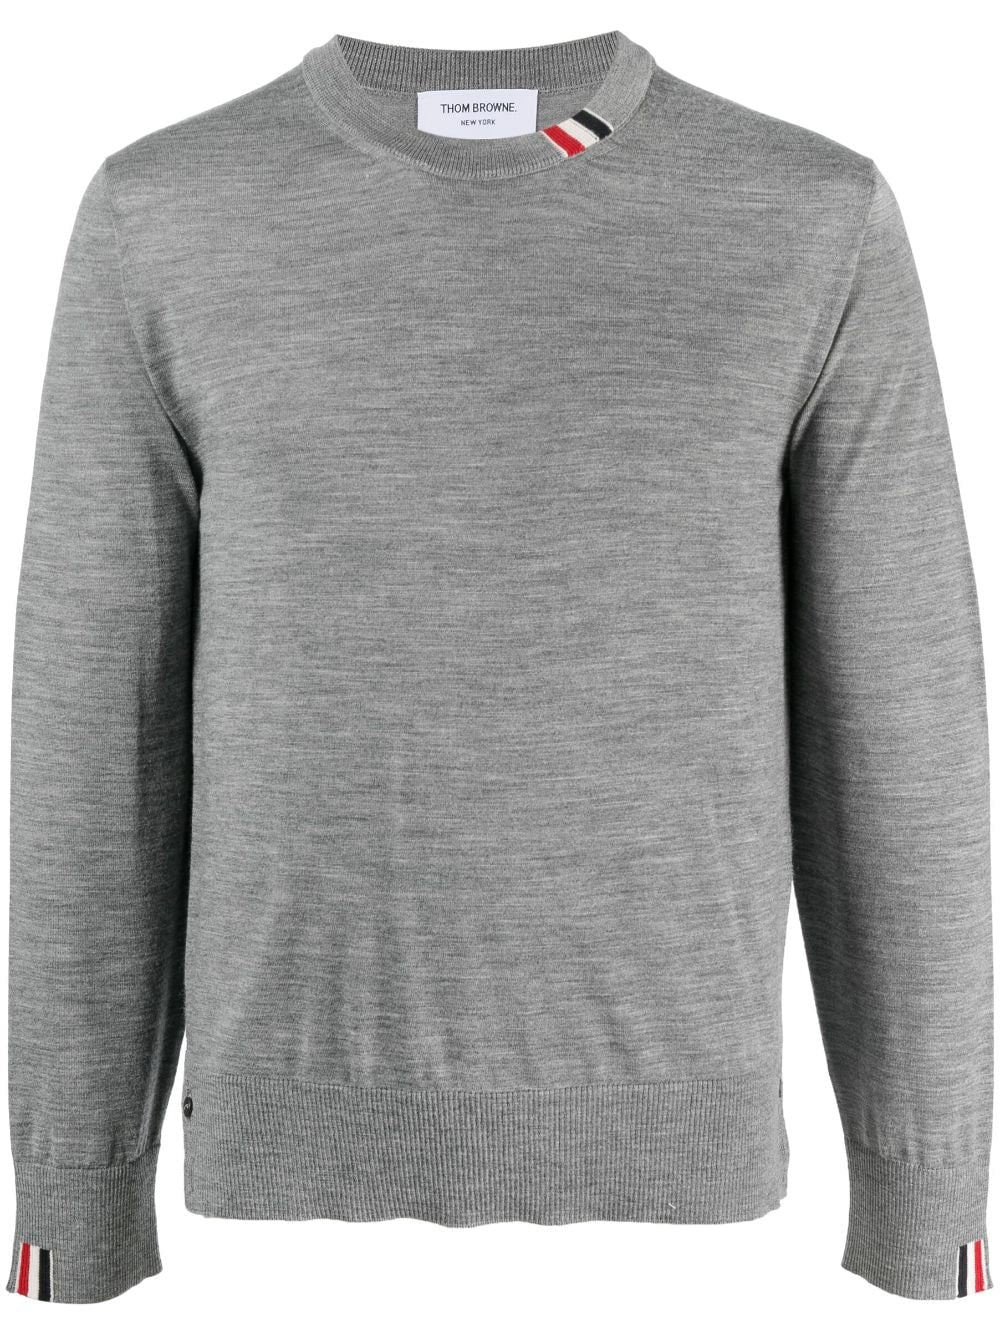 男裝灰色羊毛立領運動衫 來自FW23系列